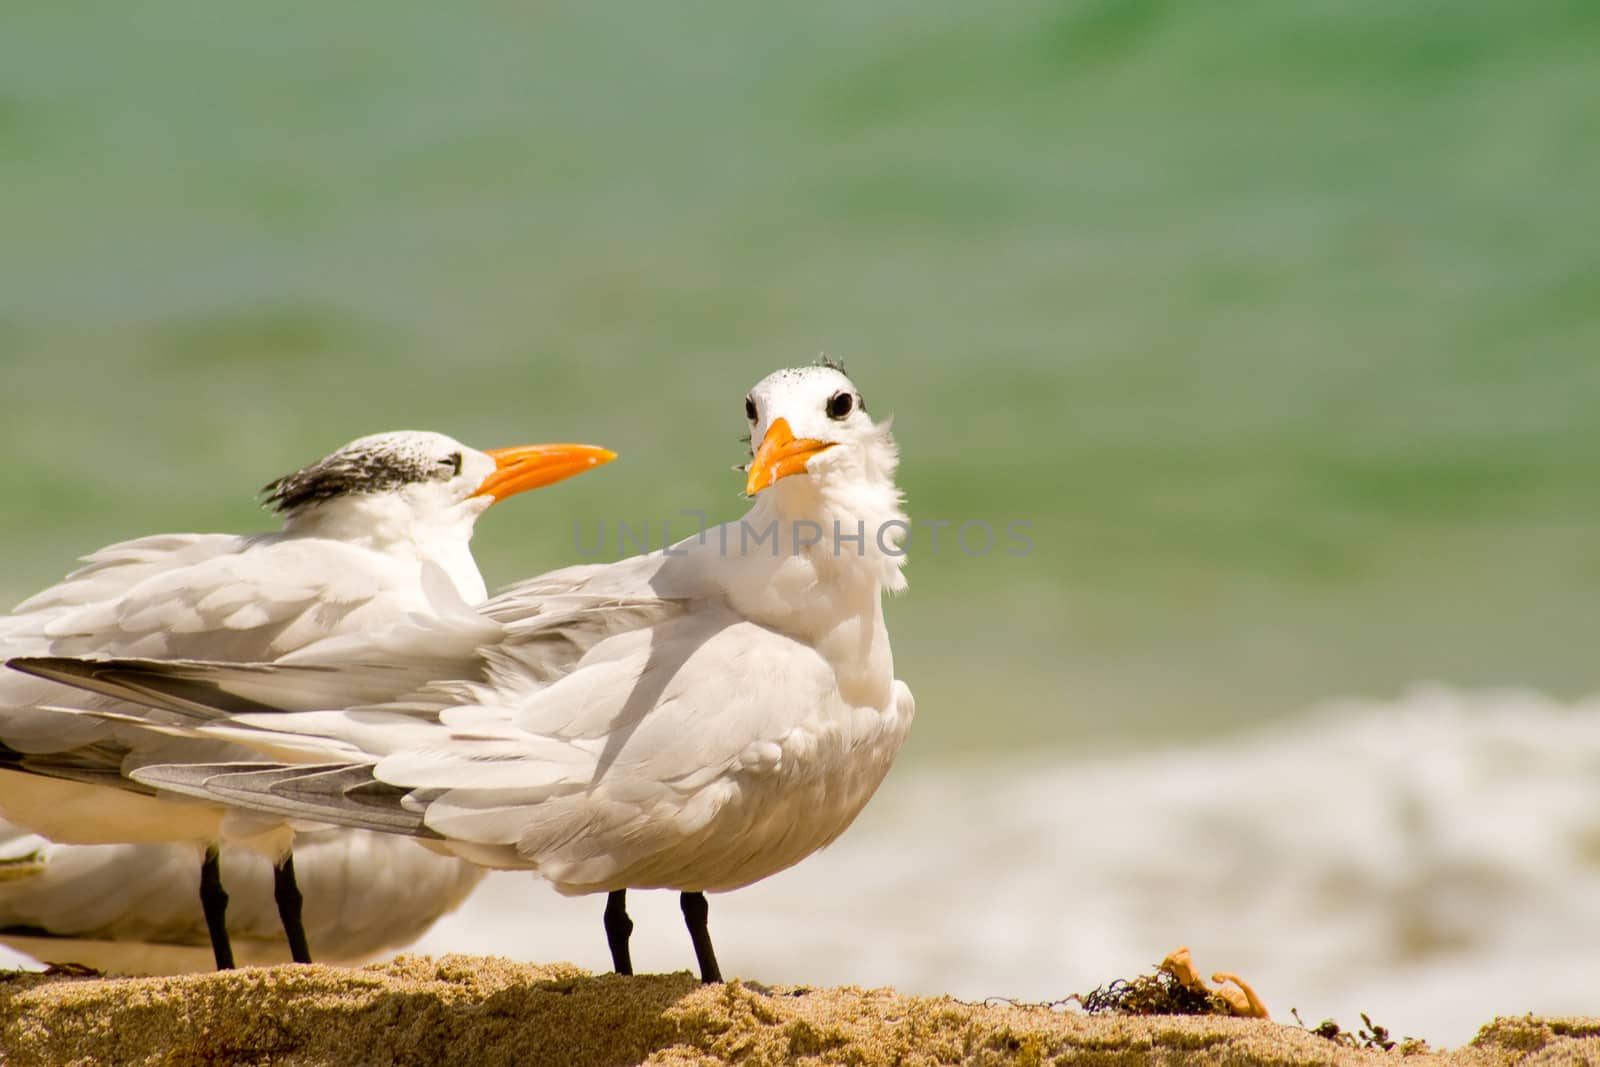 Seagulls on the beach, Miami, Miami-Dade County, Florida, USA